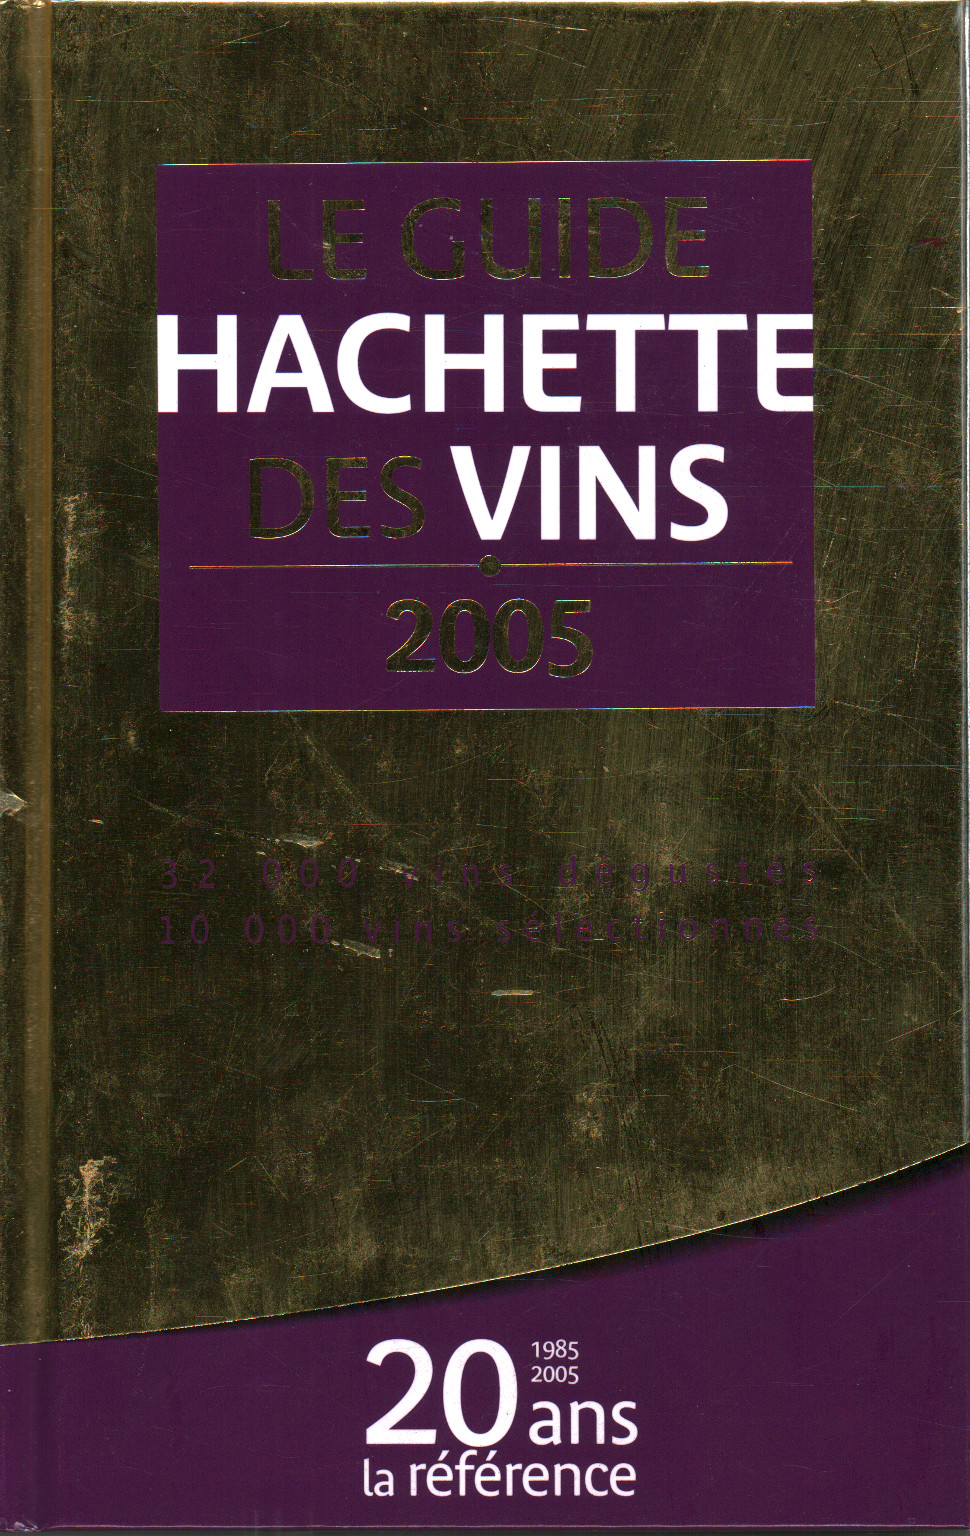 Le guide hachette des vins 2005, AA.VV